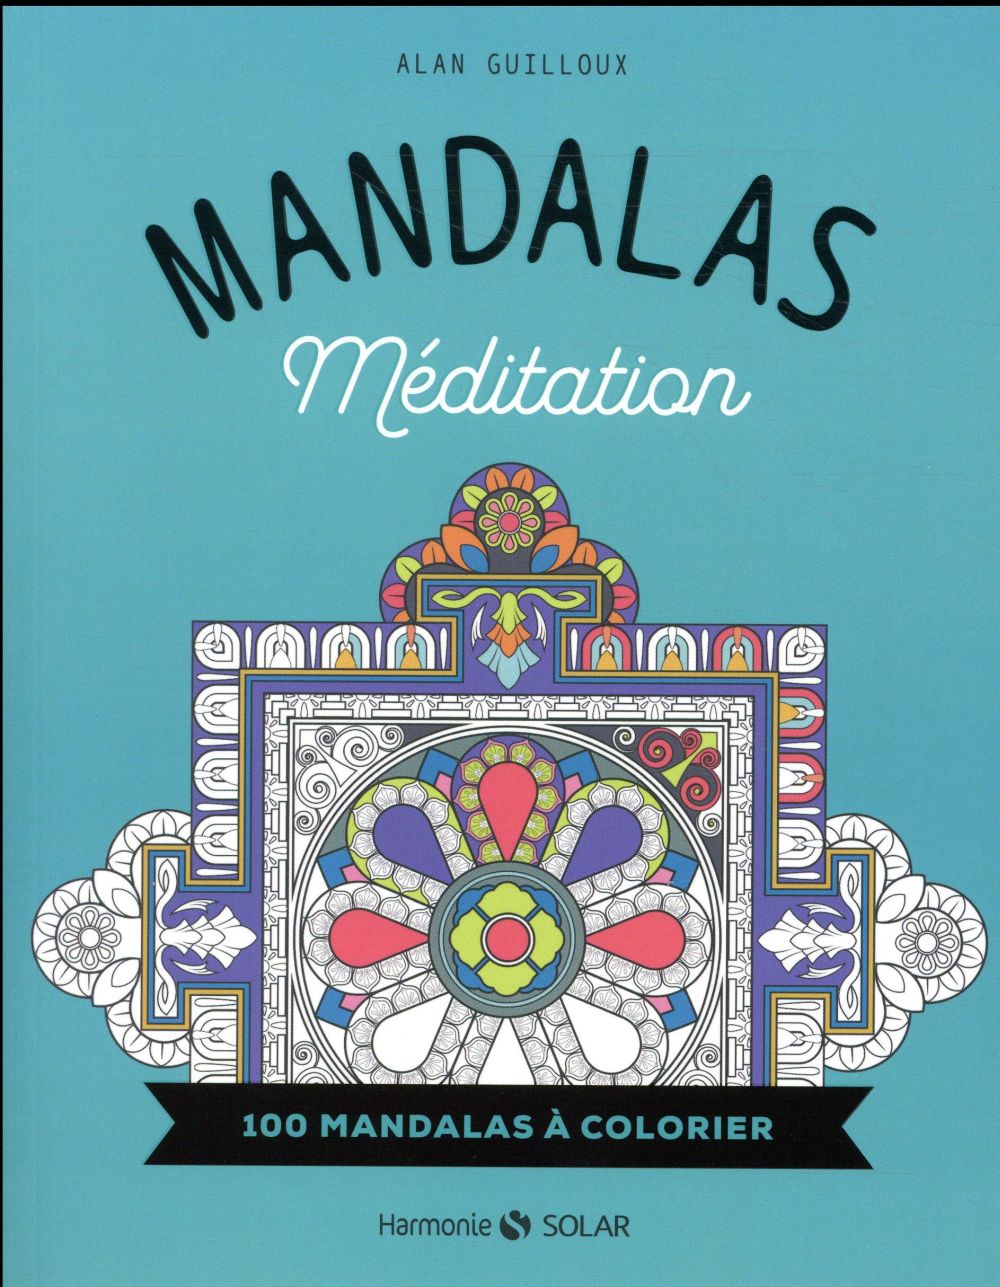 MANDALAS - MEDITATION